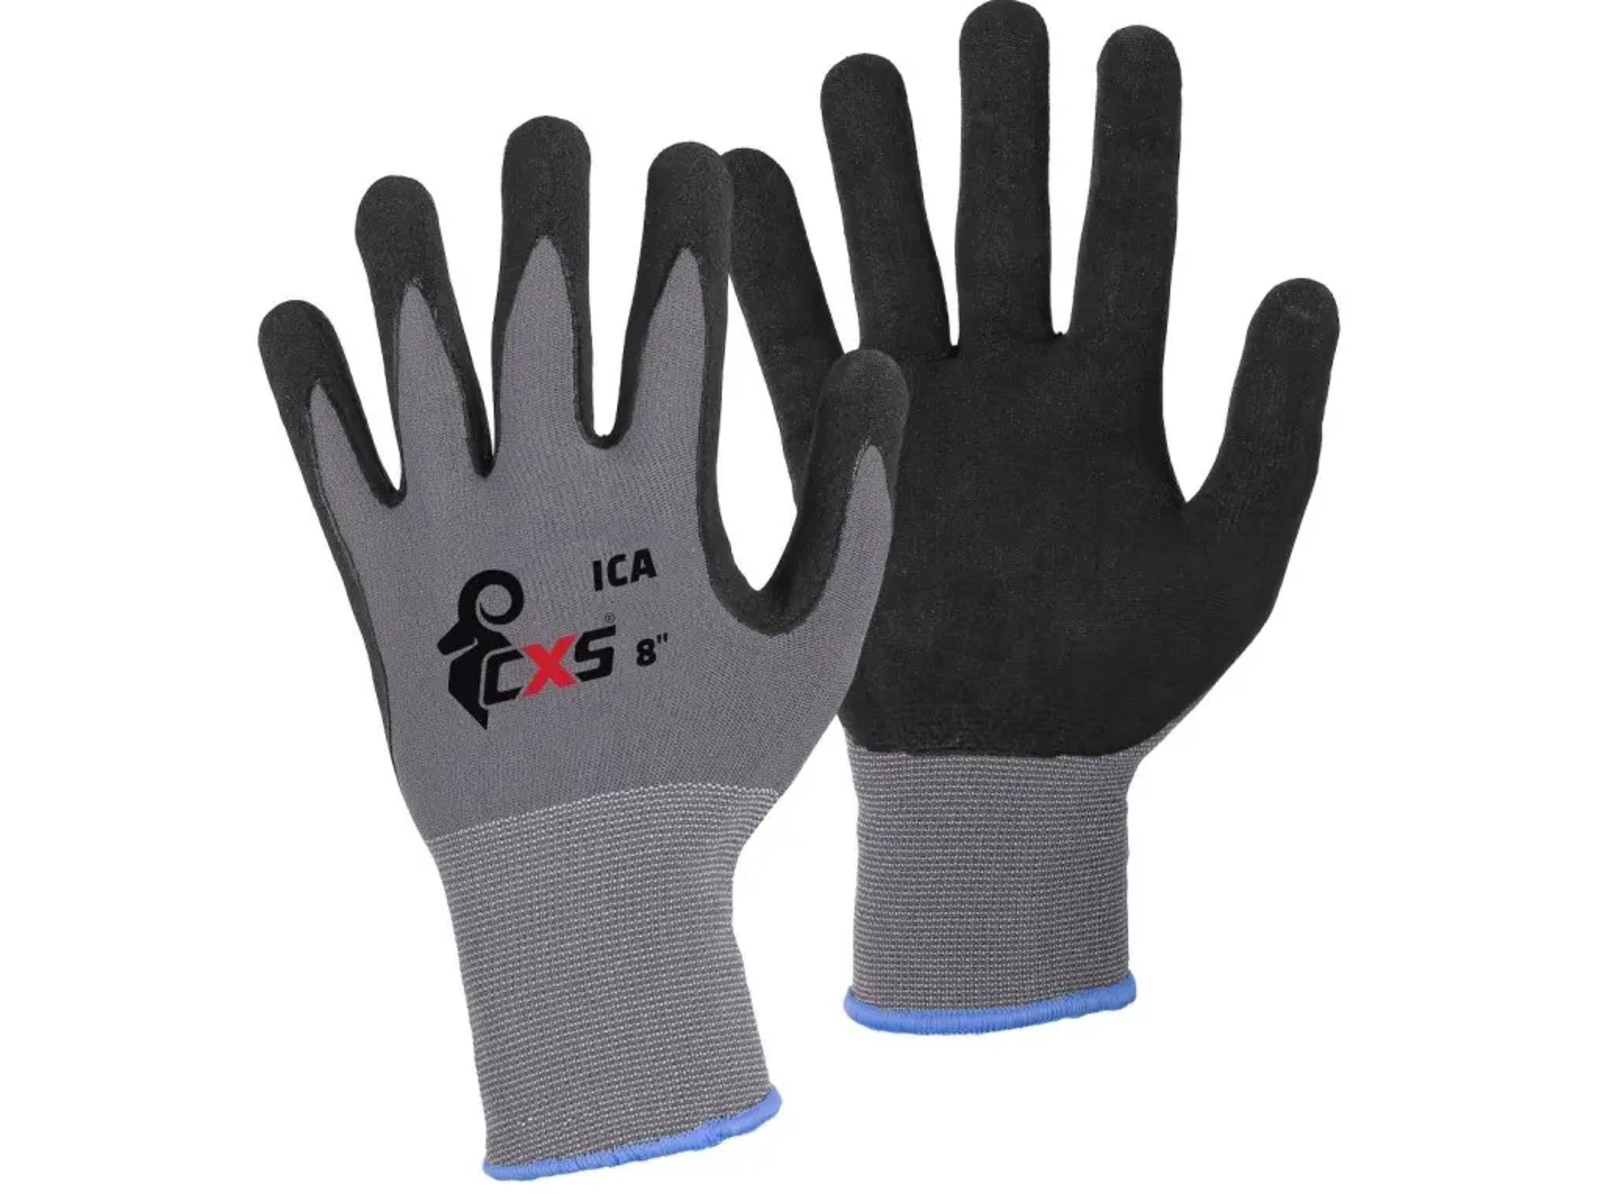 Povrstvené rukavice CXS Ica - veľkosť: 7/S, farba: sivá/čierna